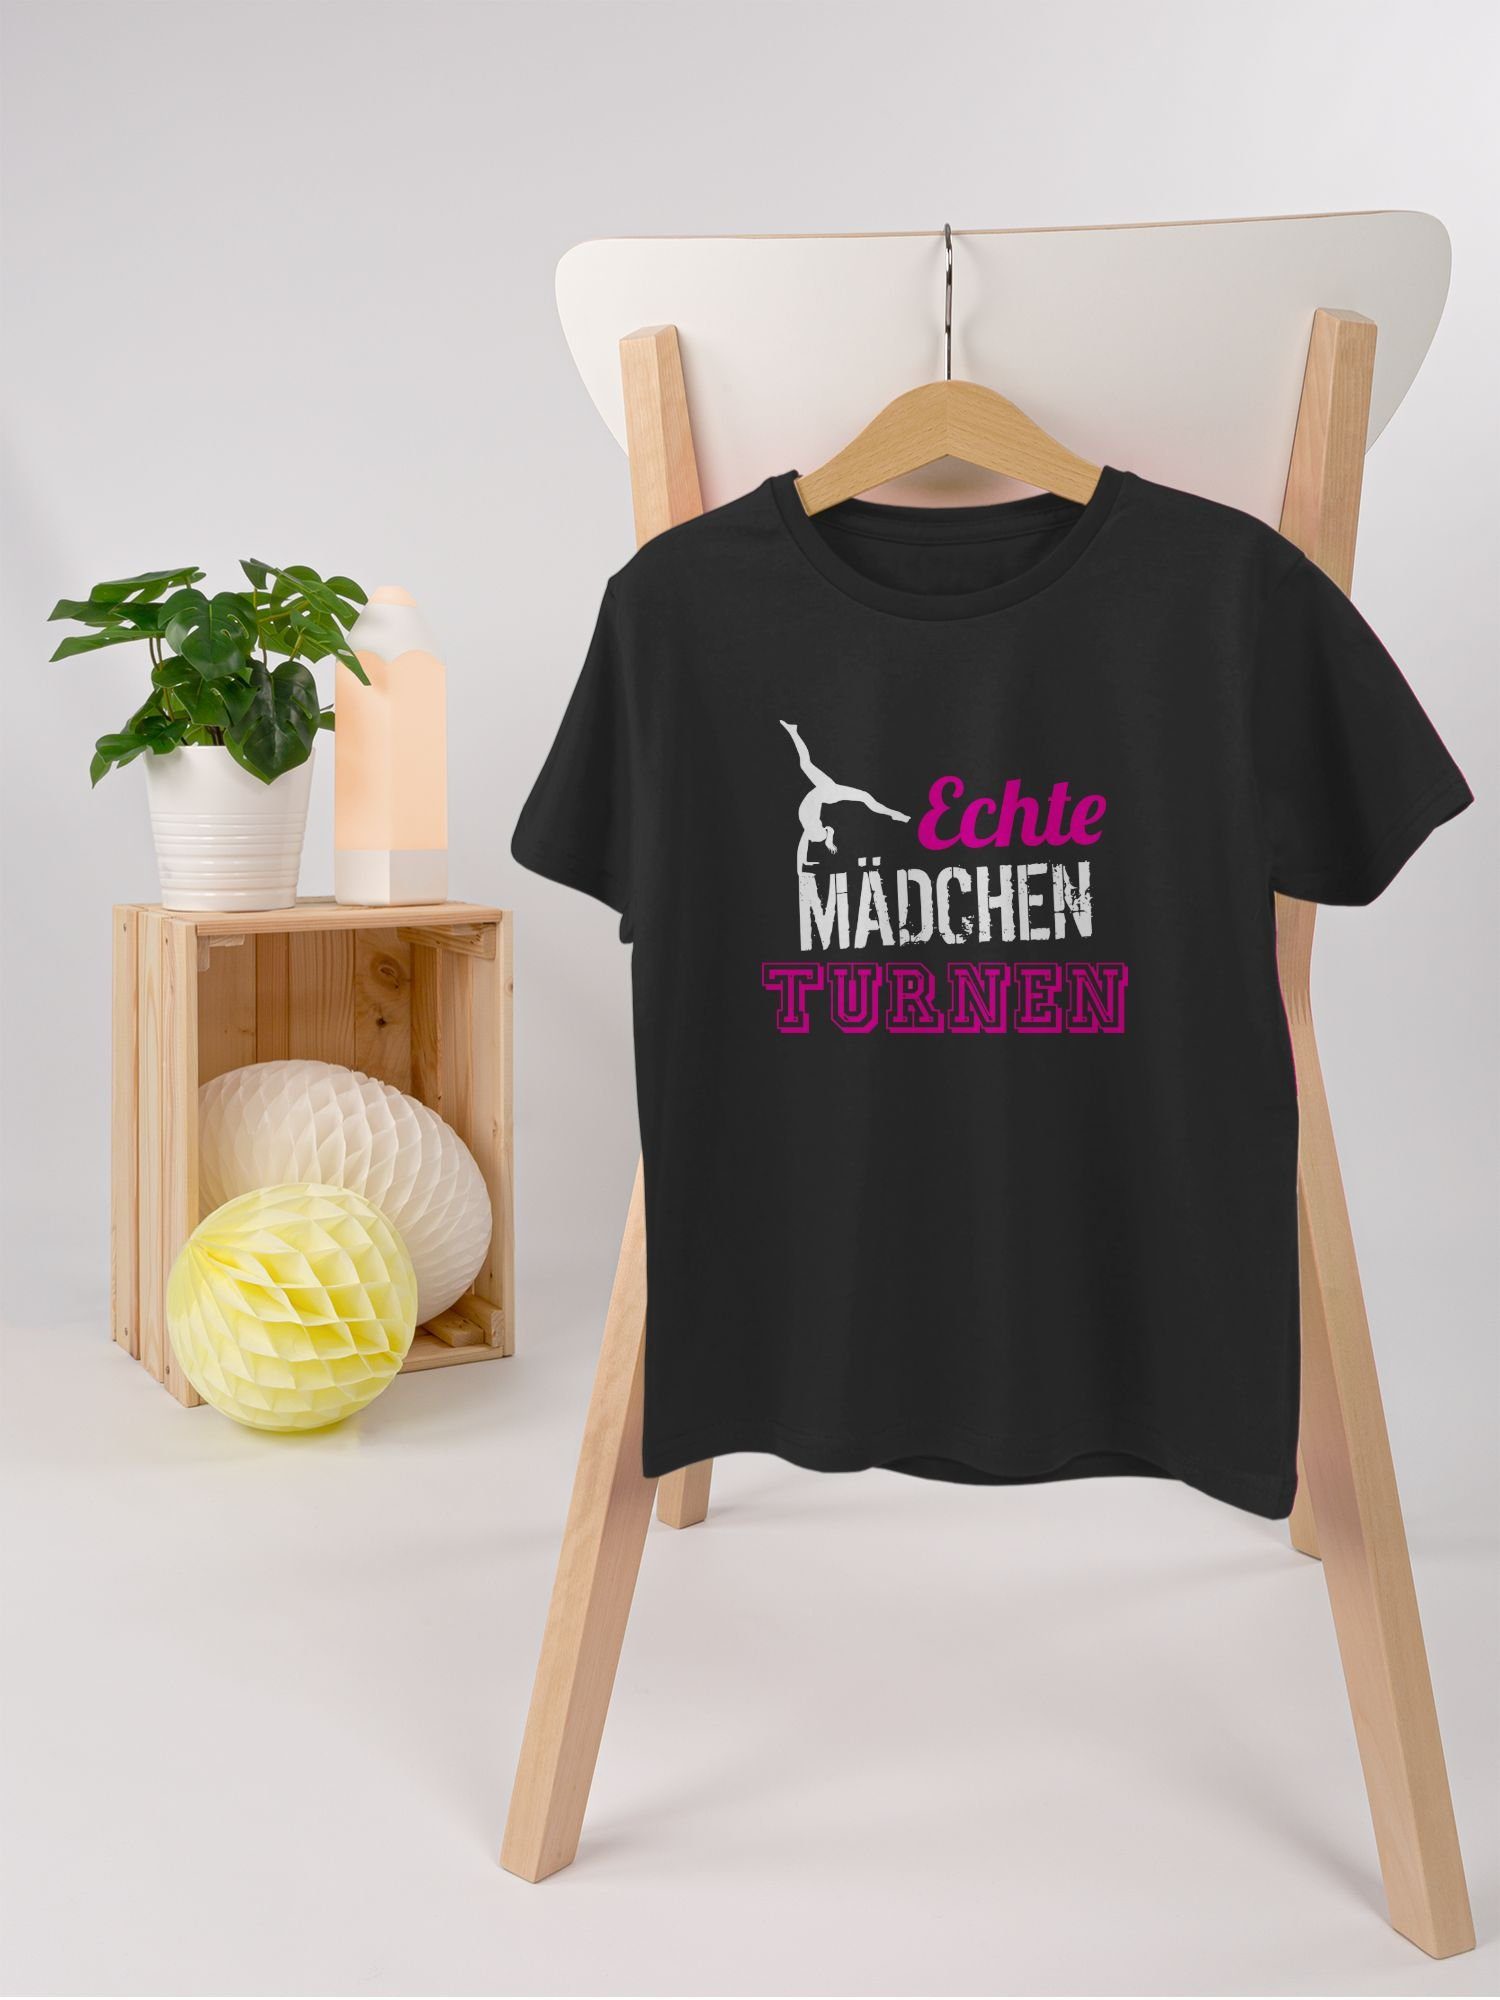 2 Turnerin turnen T-Shirt Sport Kleidung Echte Kinder Geschenk Mädchen Schwarz - Shirtracer